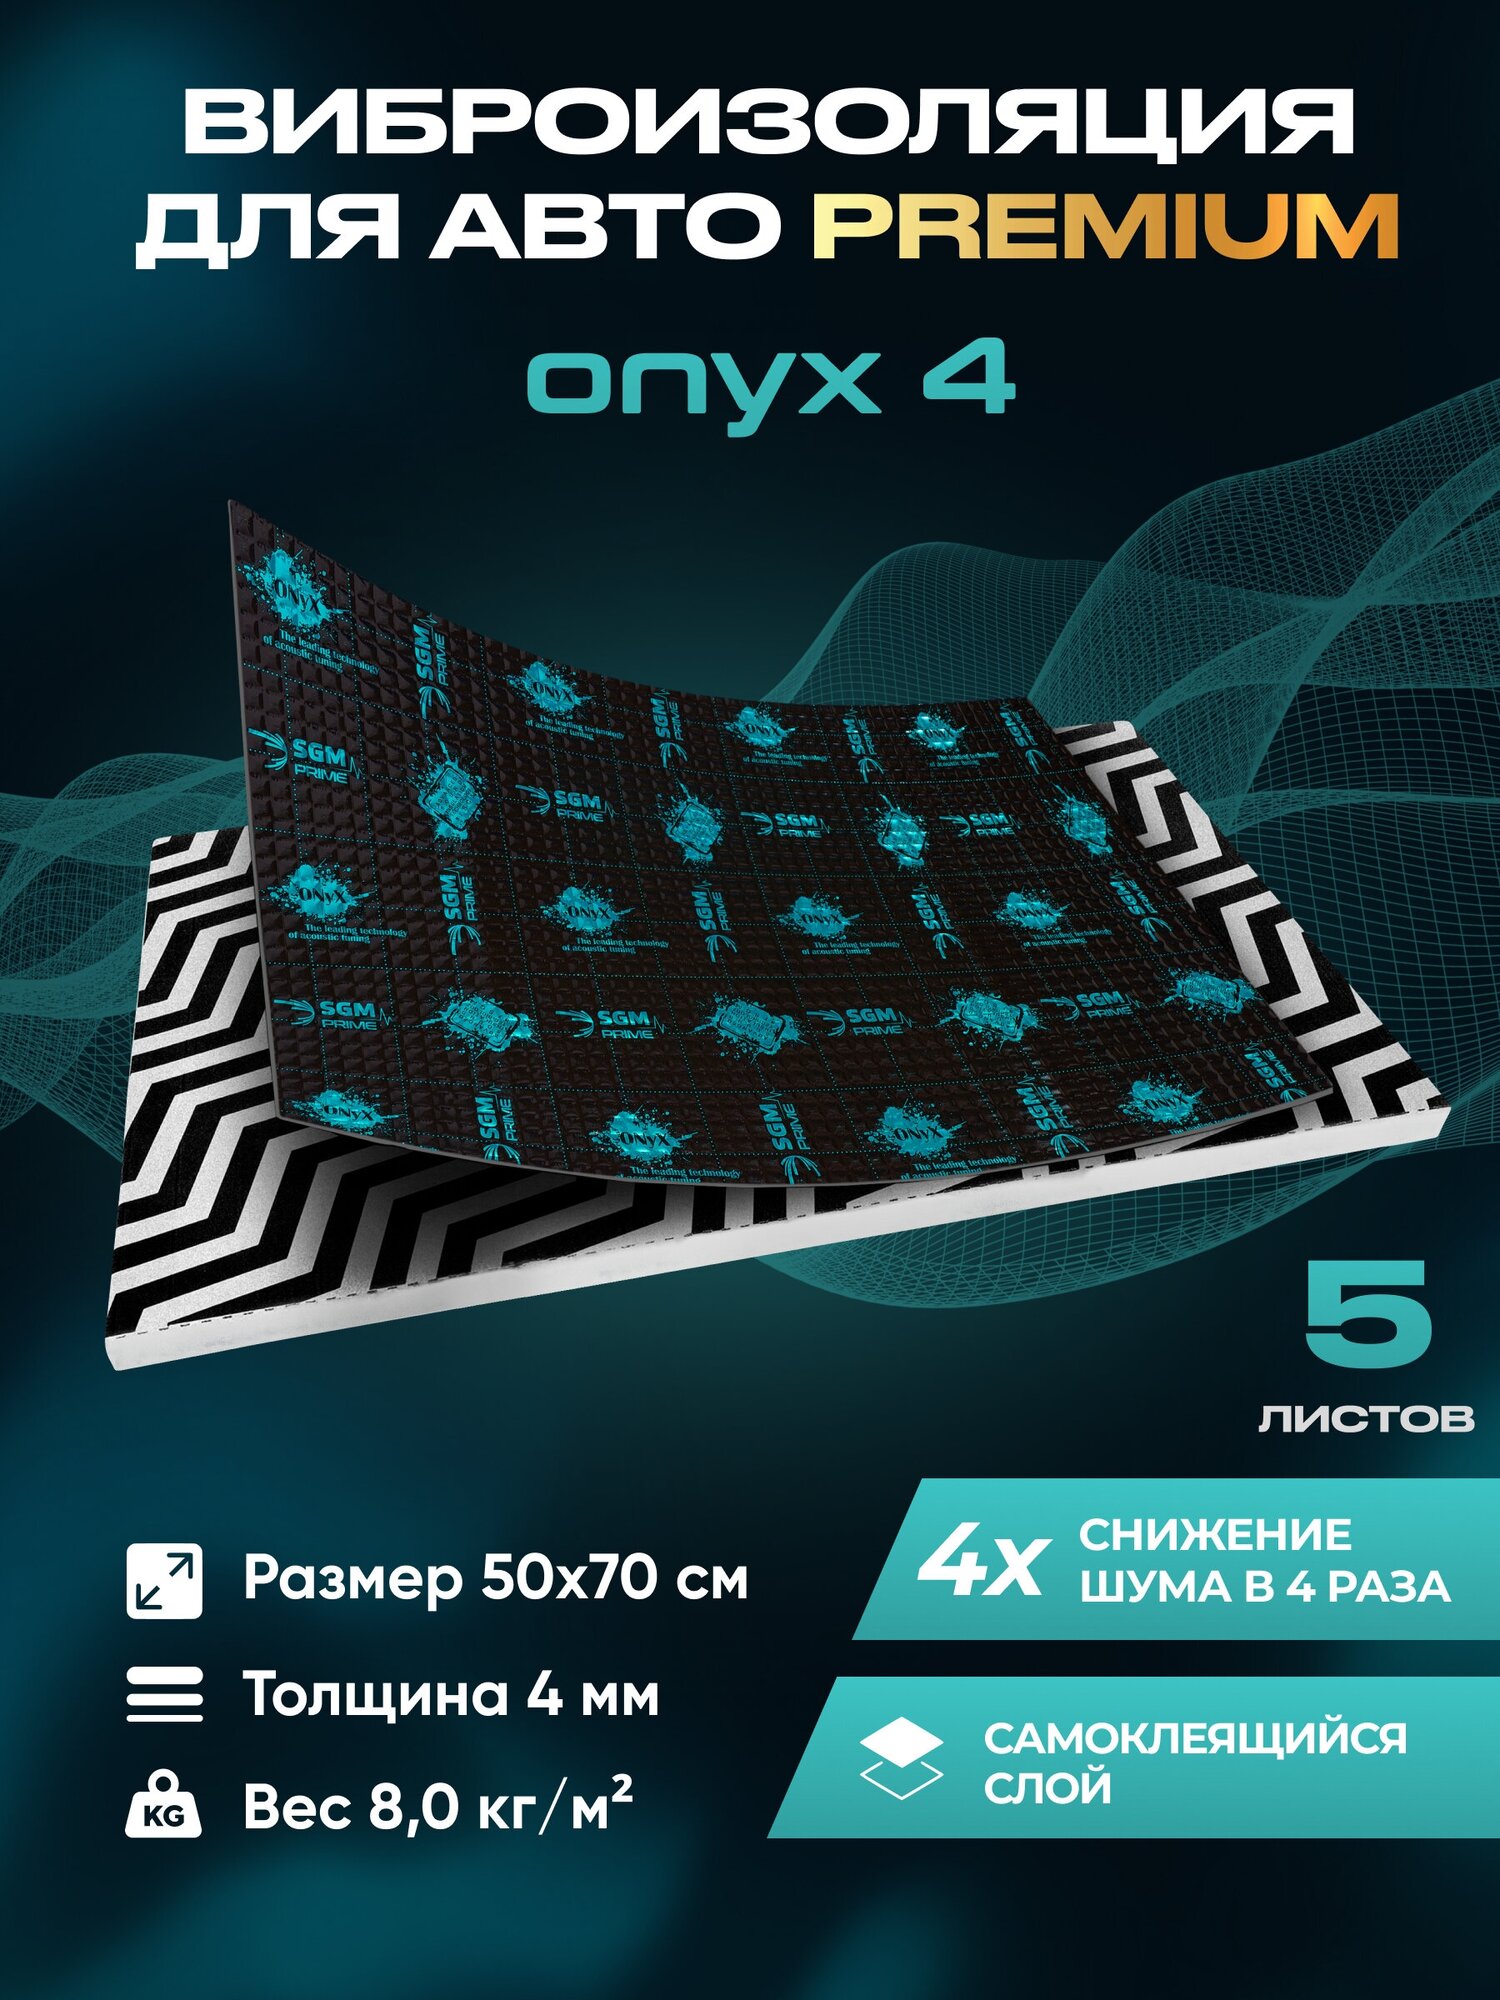 Виброизоляция Premium SGM Prime Onyx 4, упаковка- 5 листов (Большие листы 0.5х0.7) /Набор звукоизоляции/комплект самоклеящаяся шумка для авто